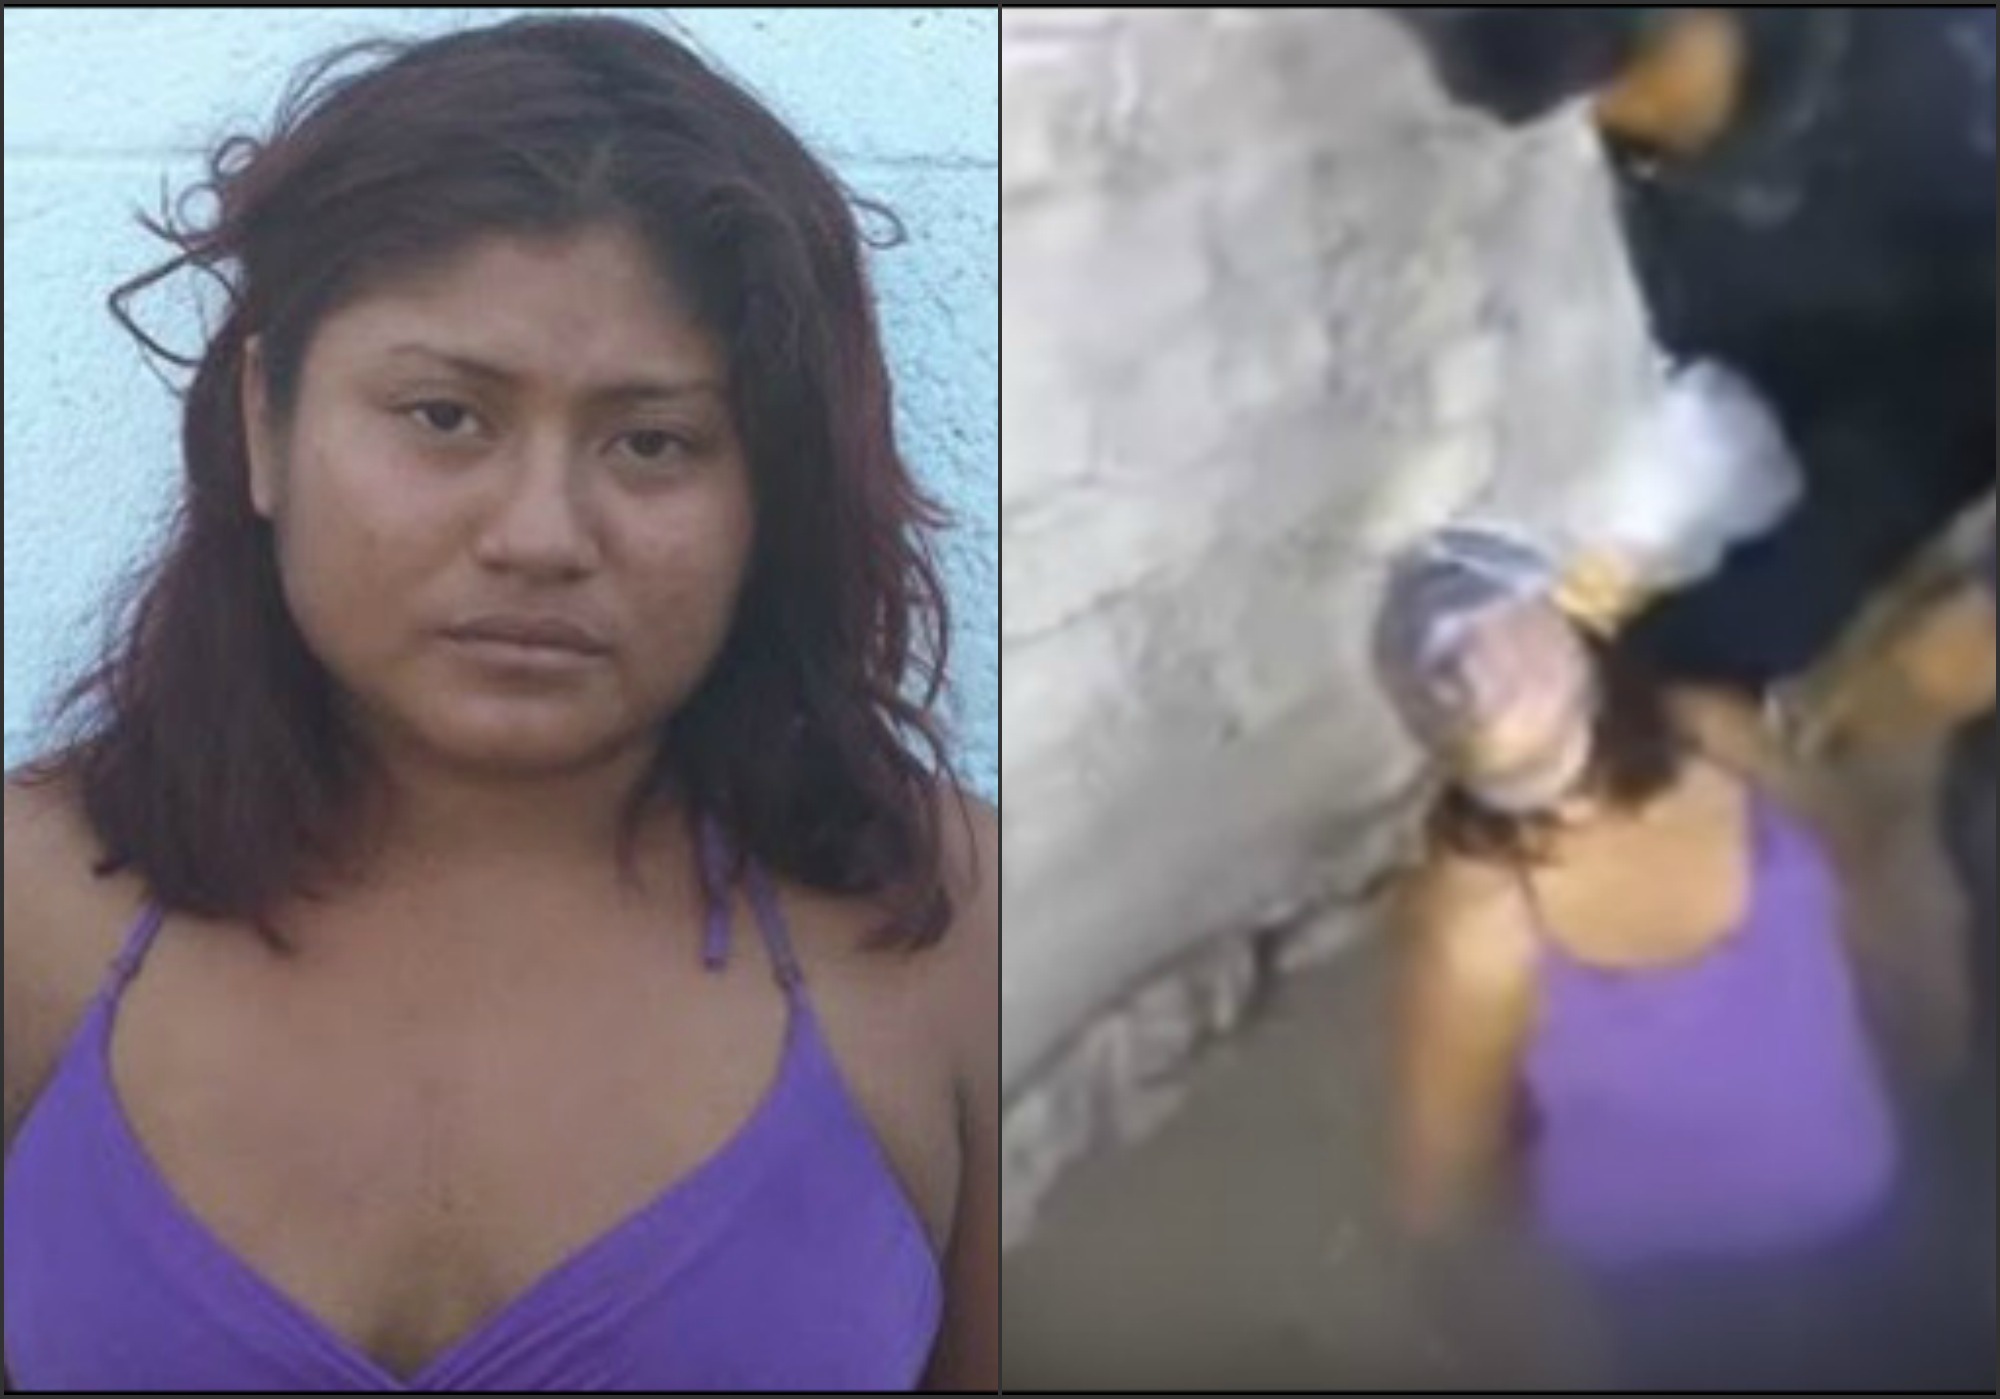  Piden abogados liberar a mujer torturada en video